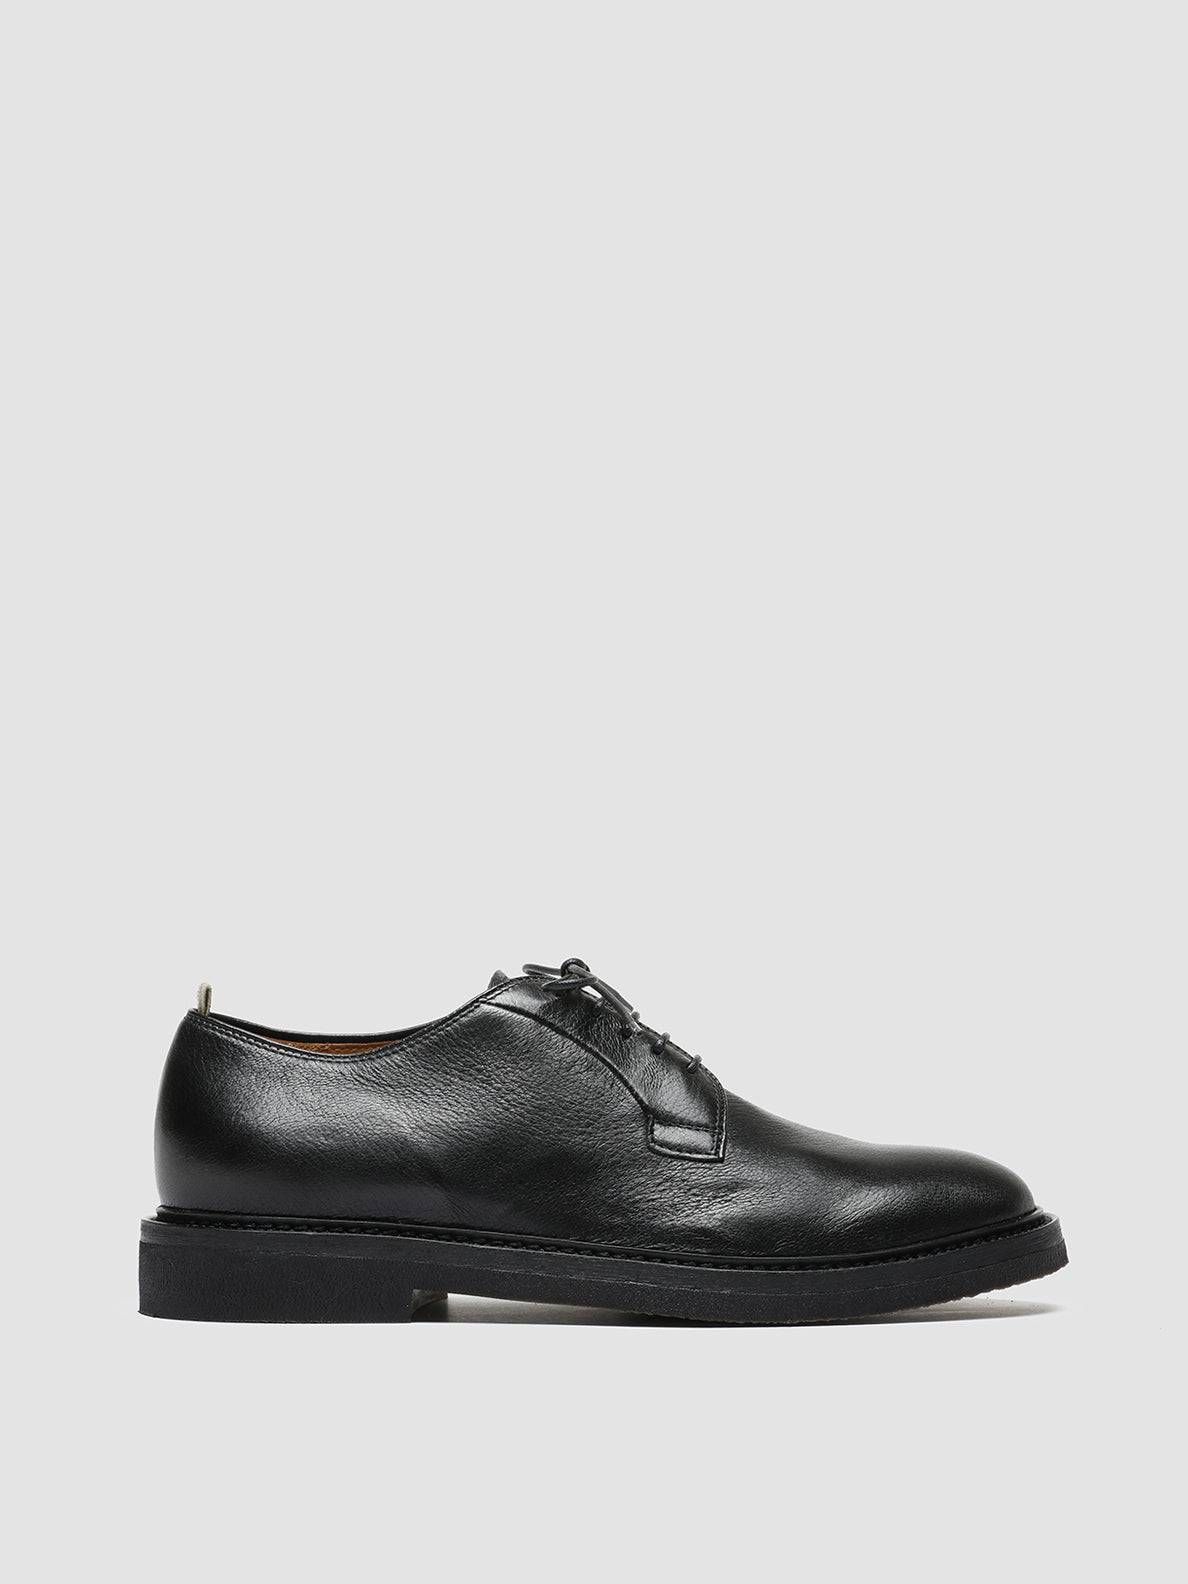 Men's Black Derby Shoes HOPKINS FLEXI 201 – Officine Creative EU